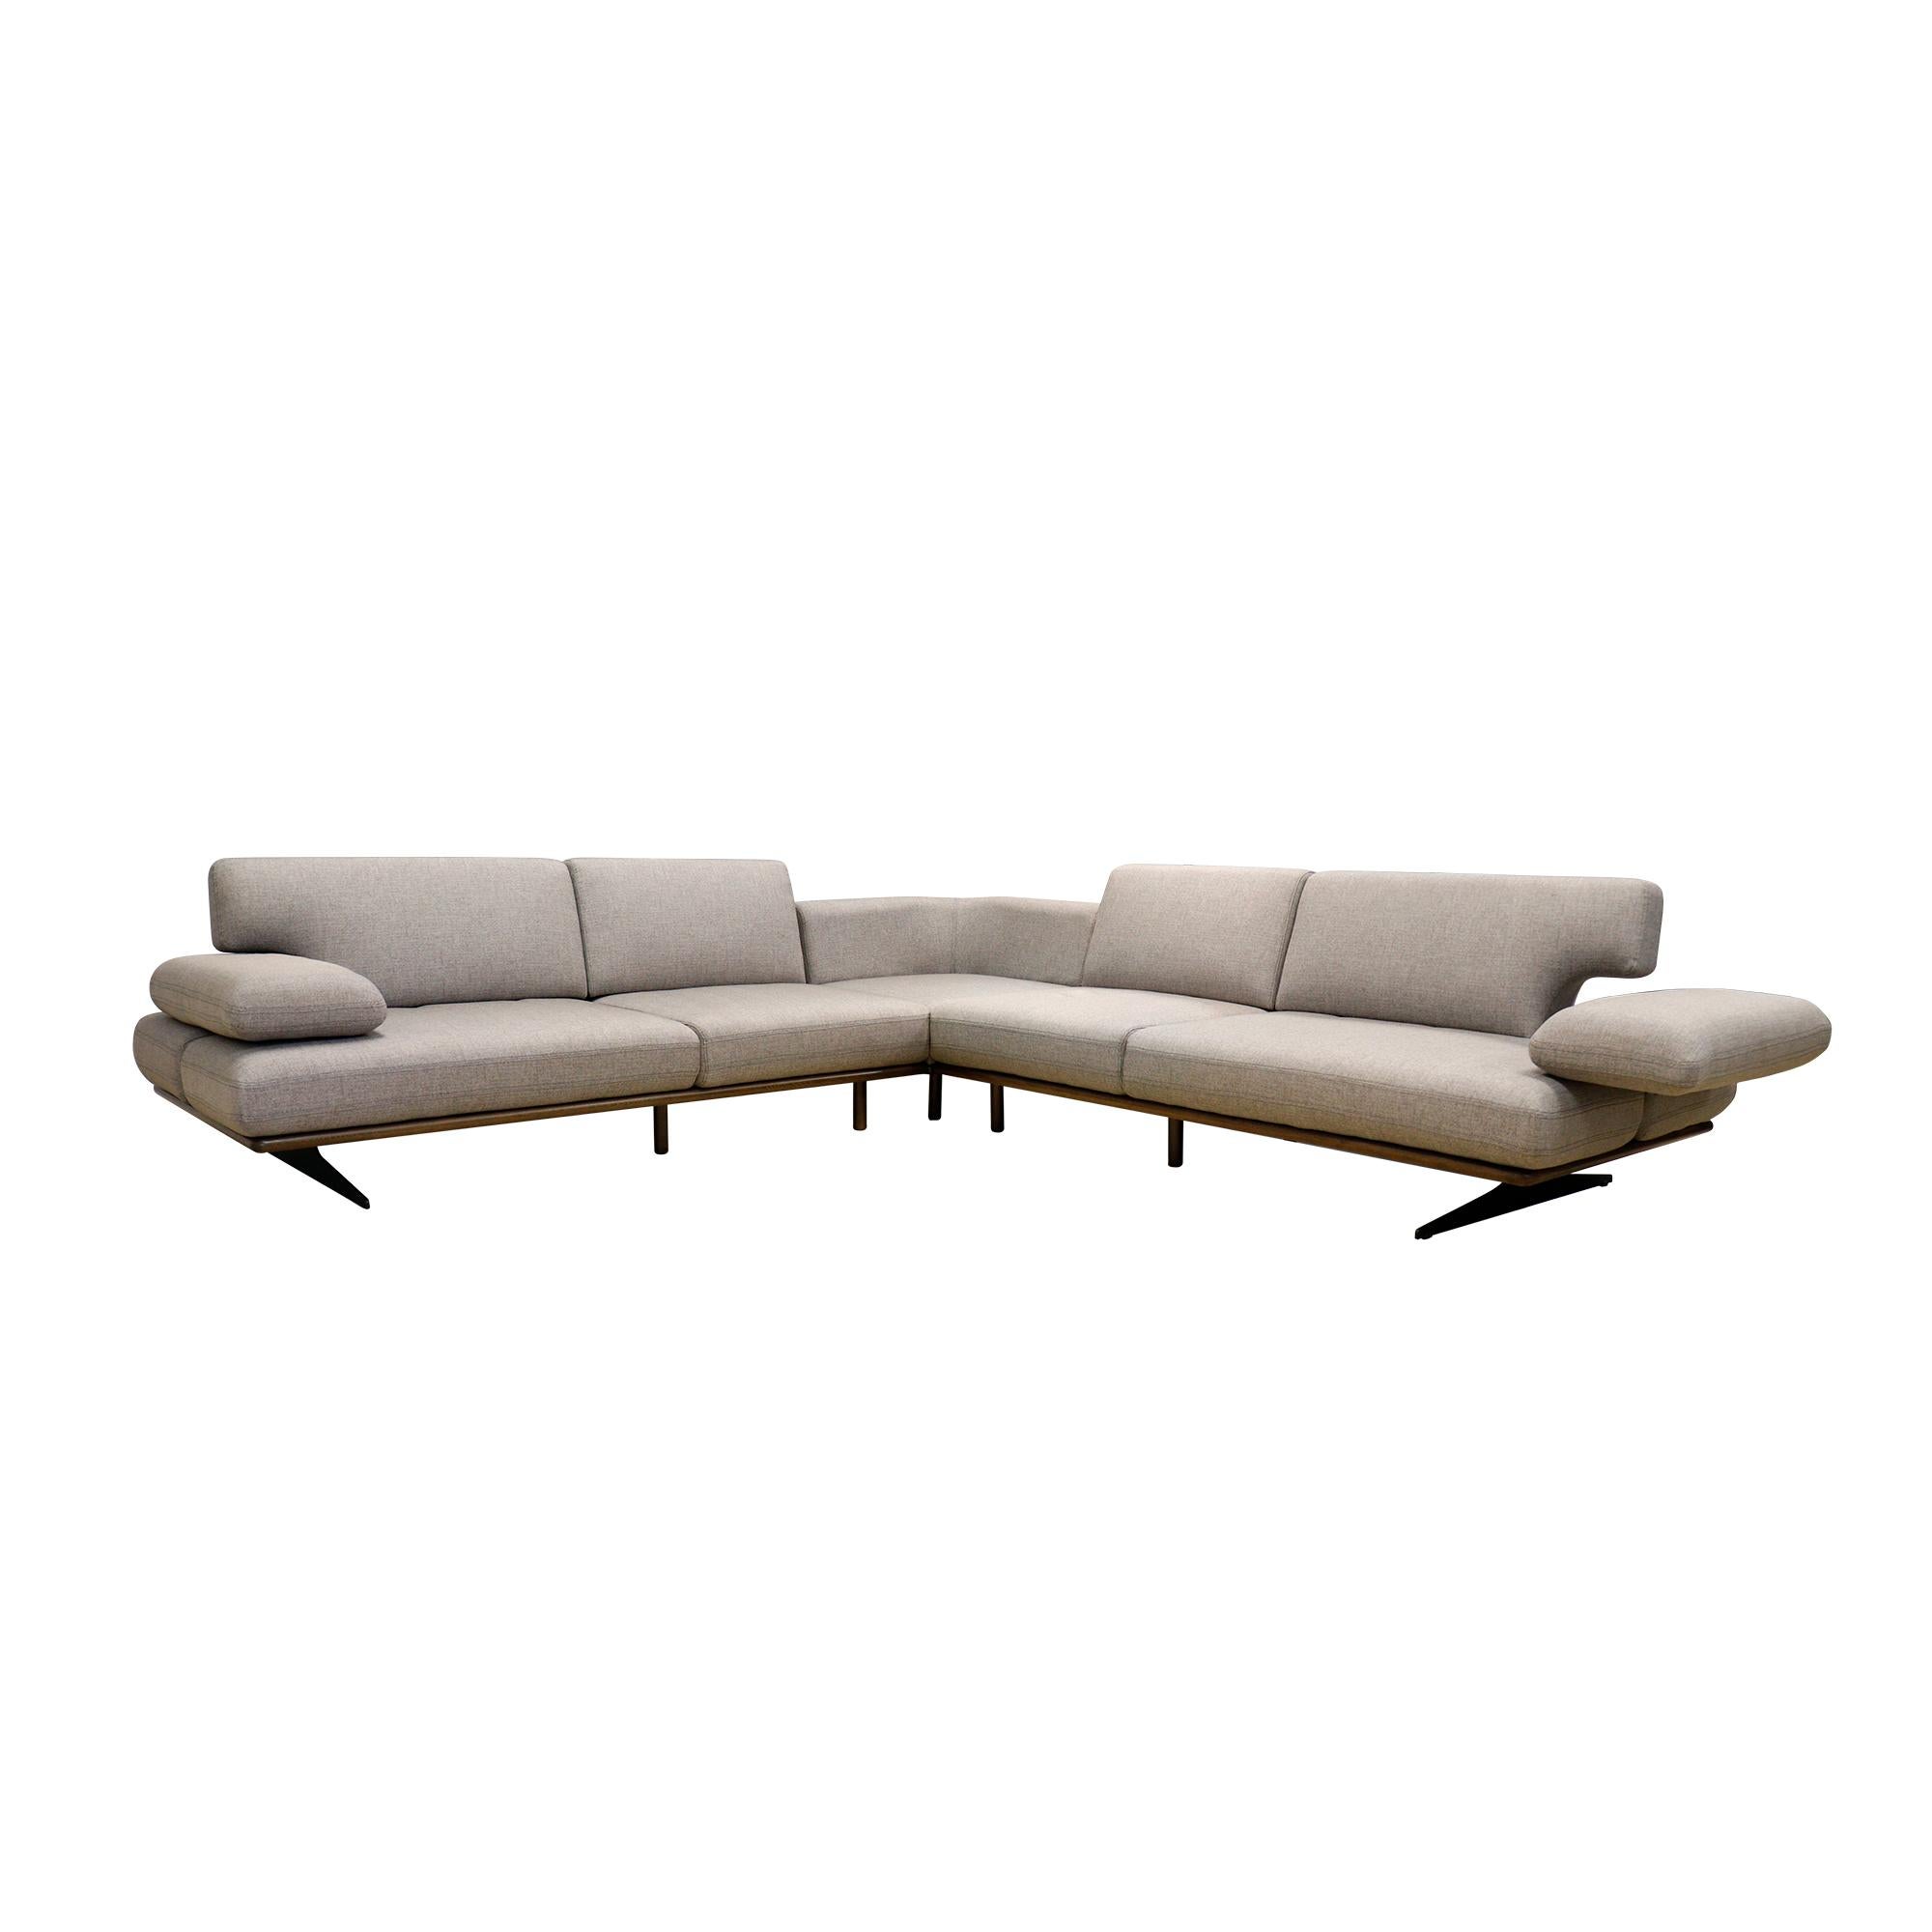 Wir stellen Ihnen unser beeindruckendes Belluno Sofa vor, ein elegantes, modernes Sektionssofa, das ebenso vielseitig wie stilvoll ist. Dieses flache, ausziehbare Sofa verfügt über glatte, flügelartige Arm- und Rückenlehnen, die sich einzeln